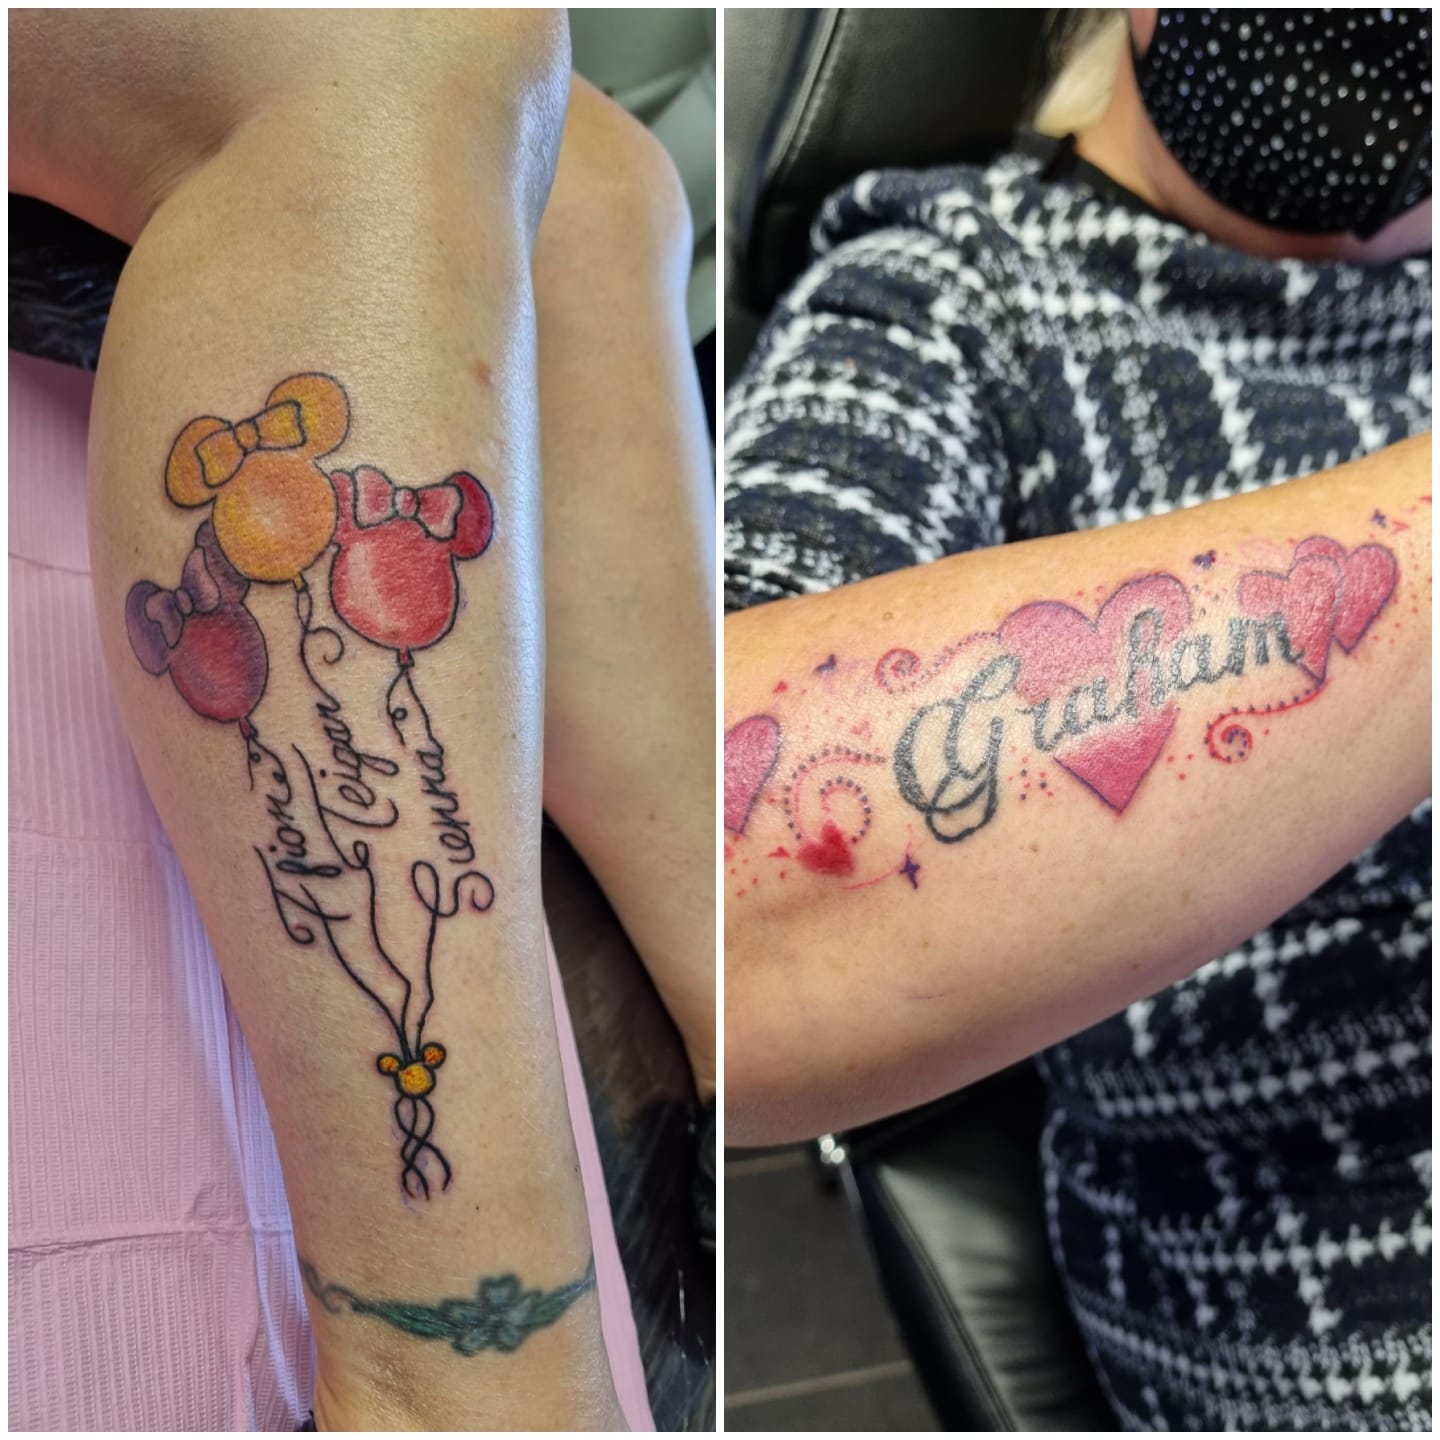 Micky mouse balloon | Balloon tattoo, Mickey tattoo, Tattoos